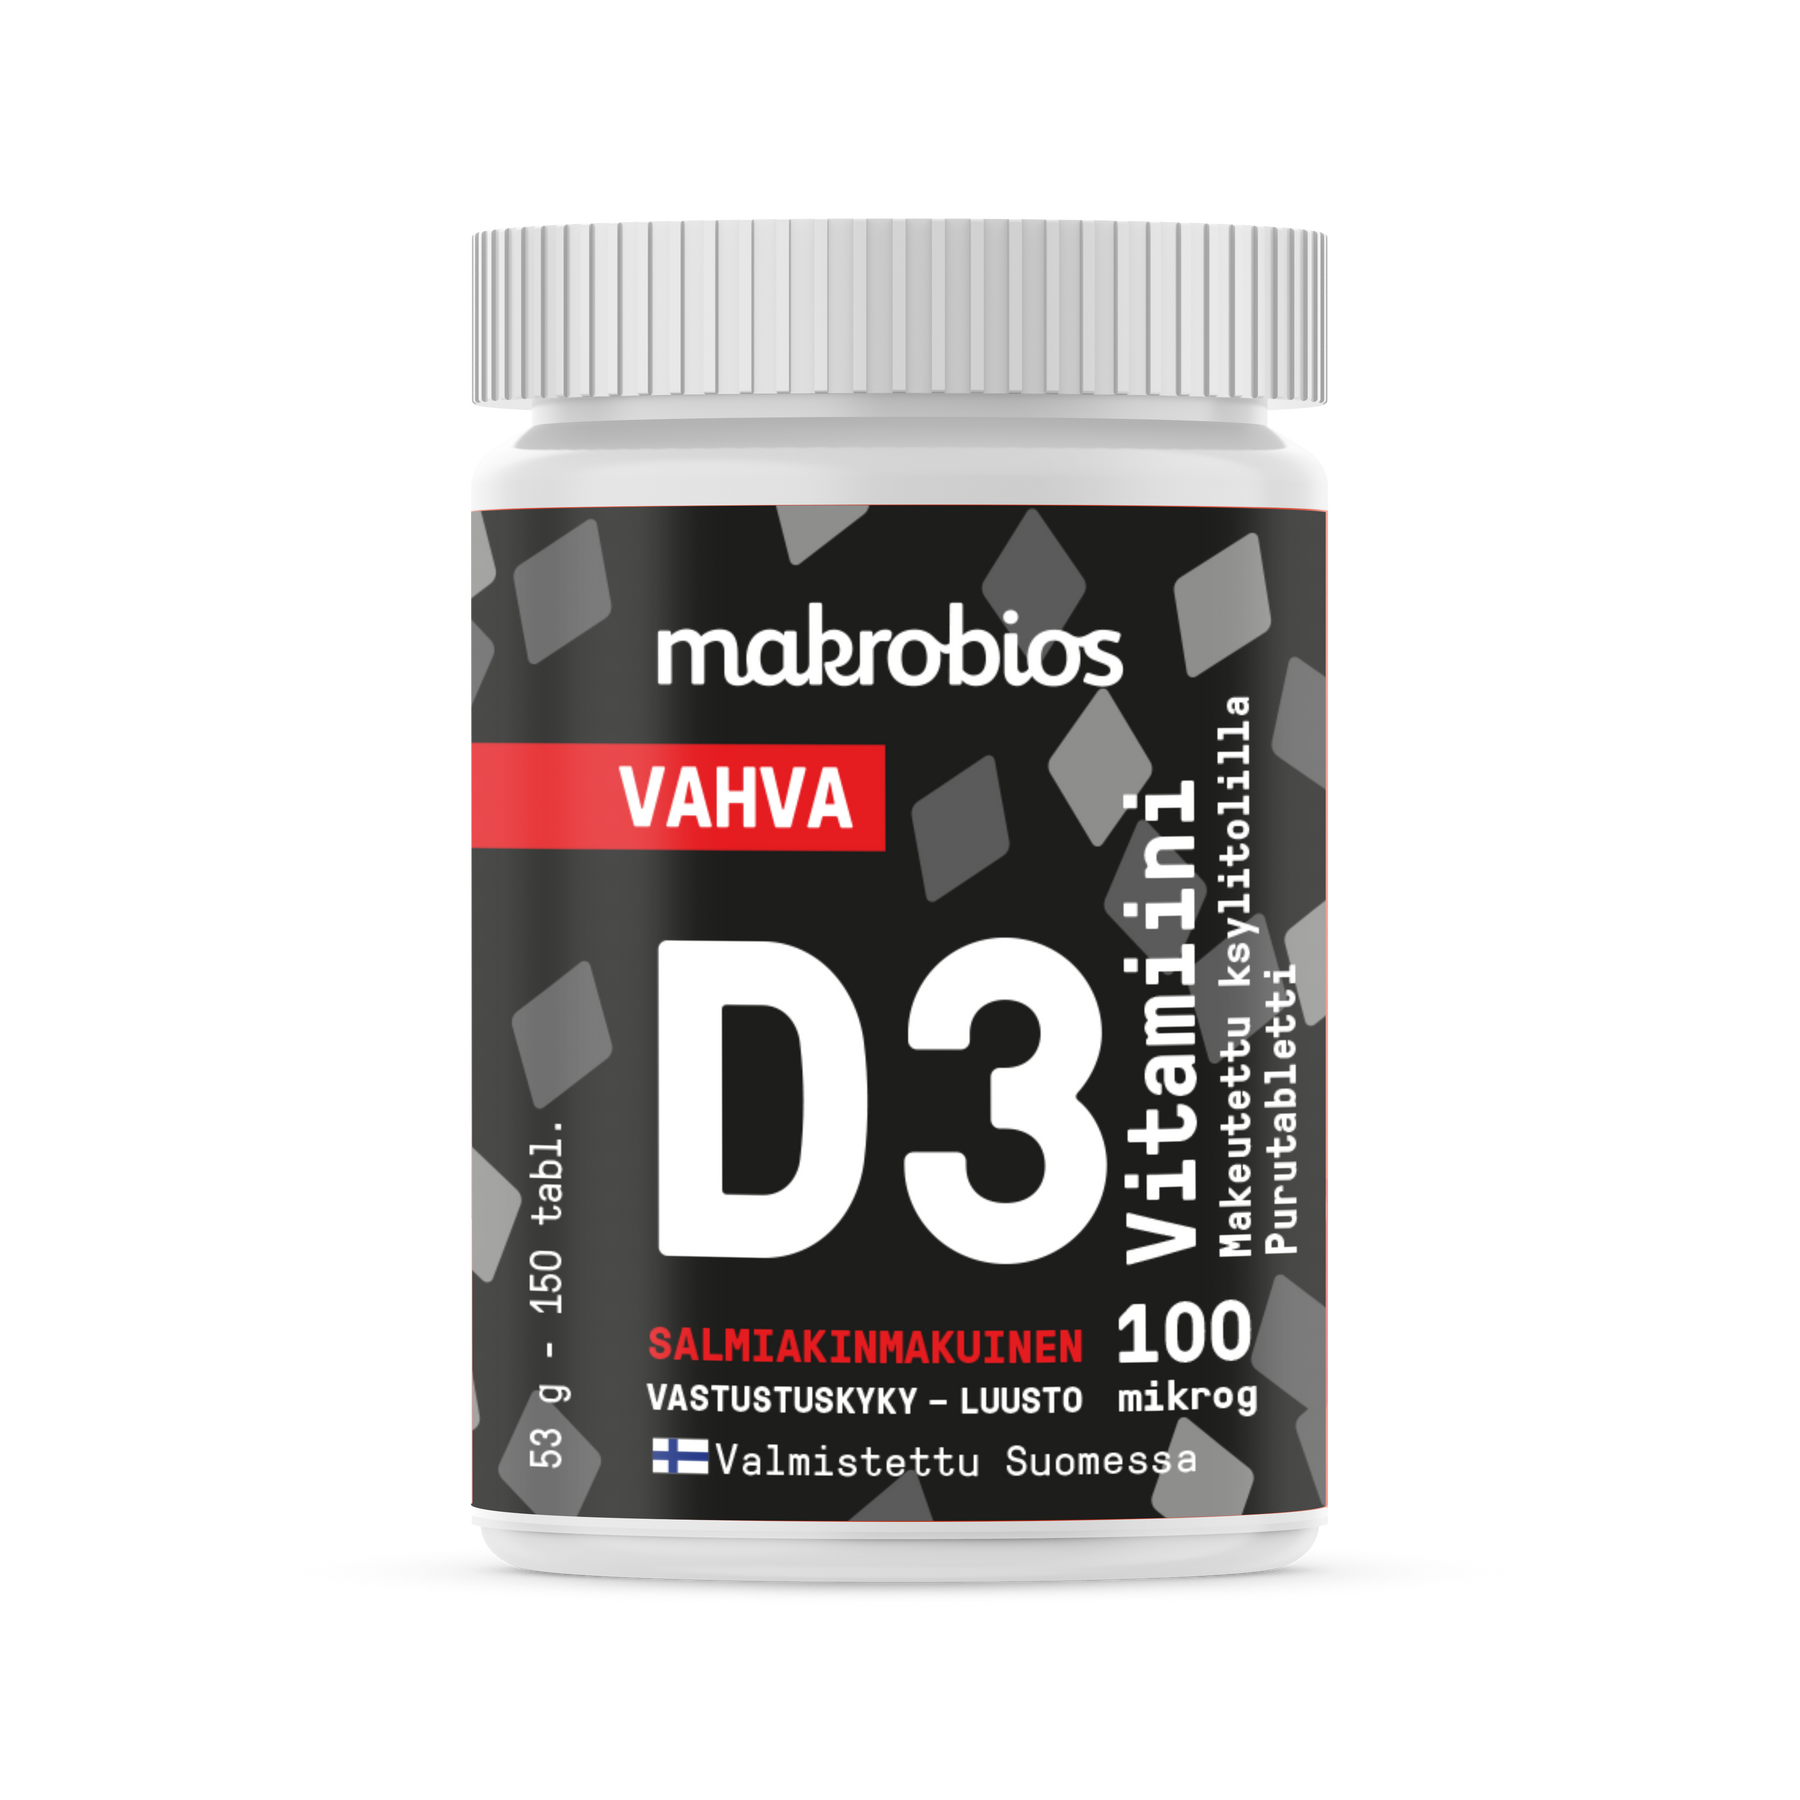 Makrobios Vahva D3-Vitamiini 100 µg 150 tabl. - Salmiakinmakuinen - erä